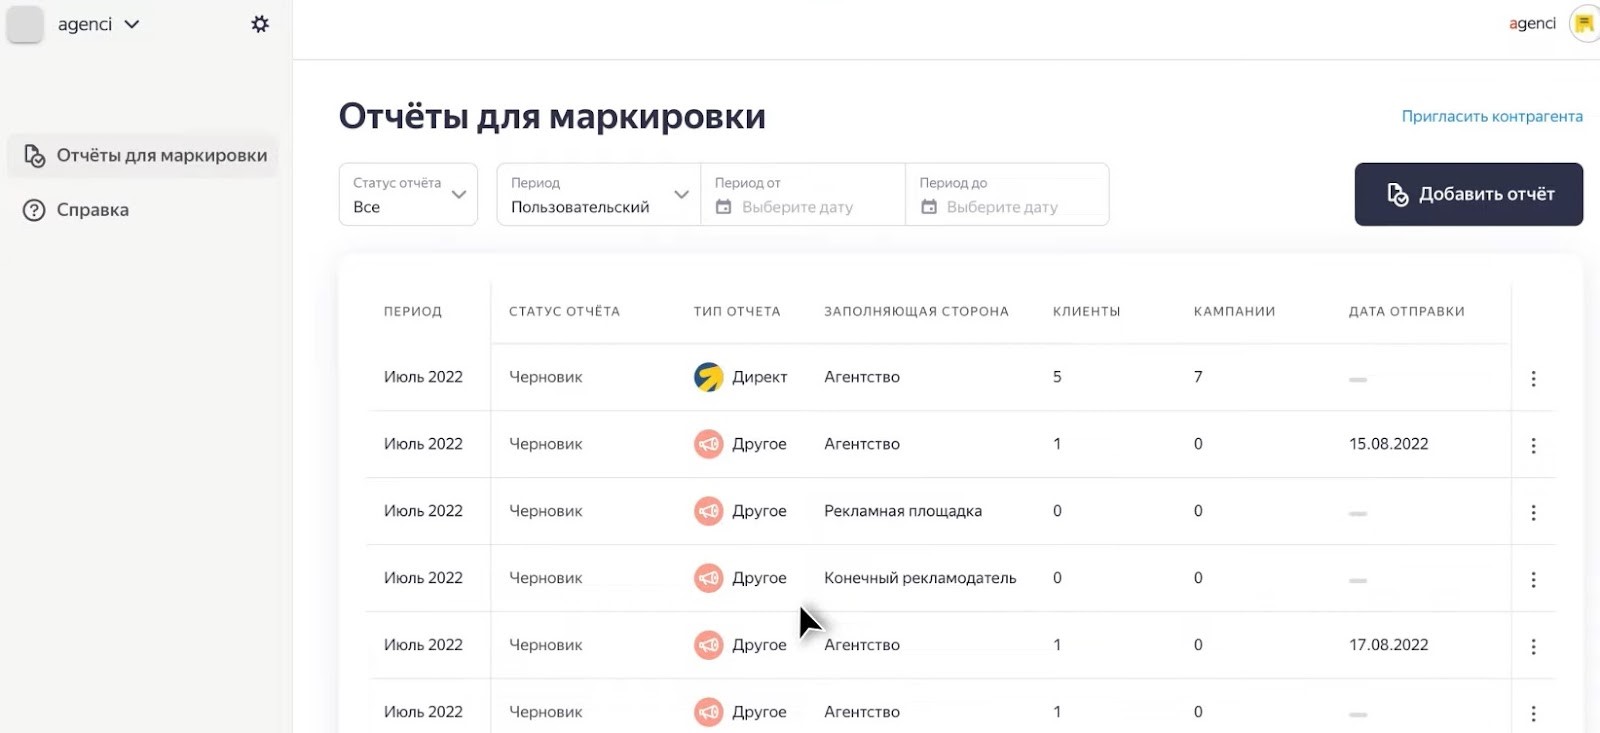 Отчеты для маркировки рекламы в Яндексе